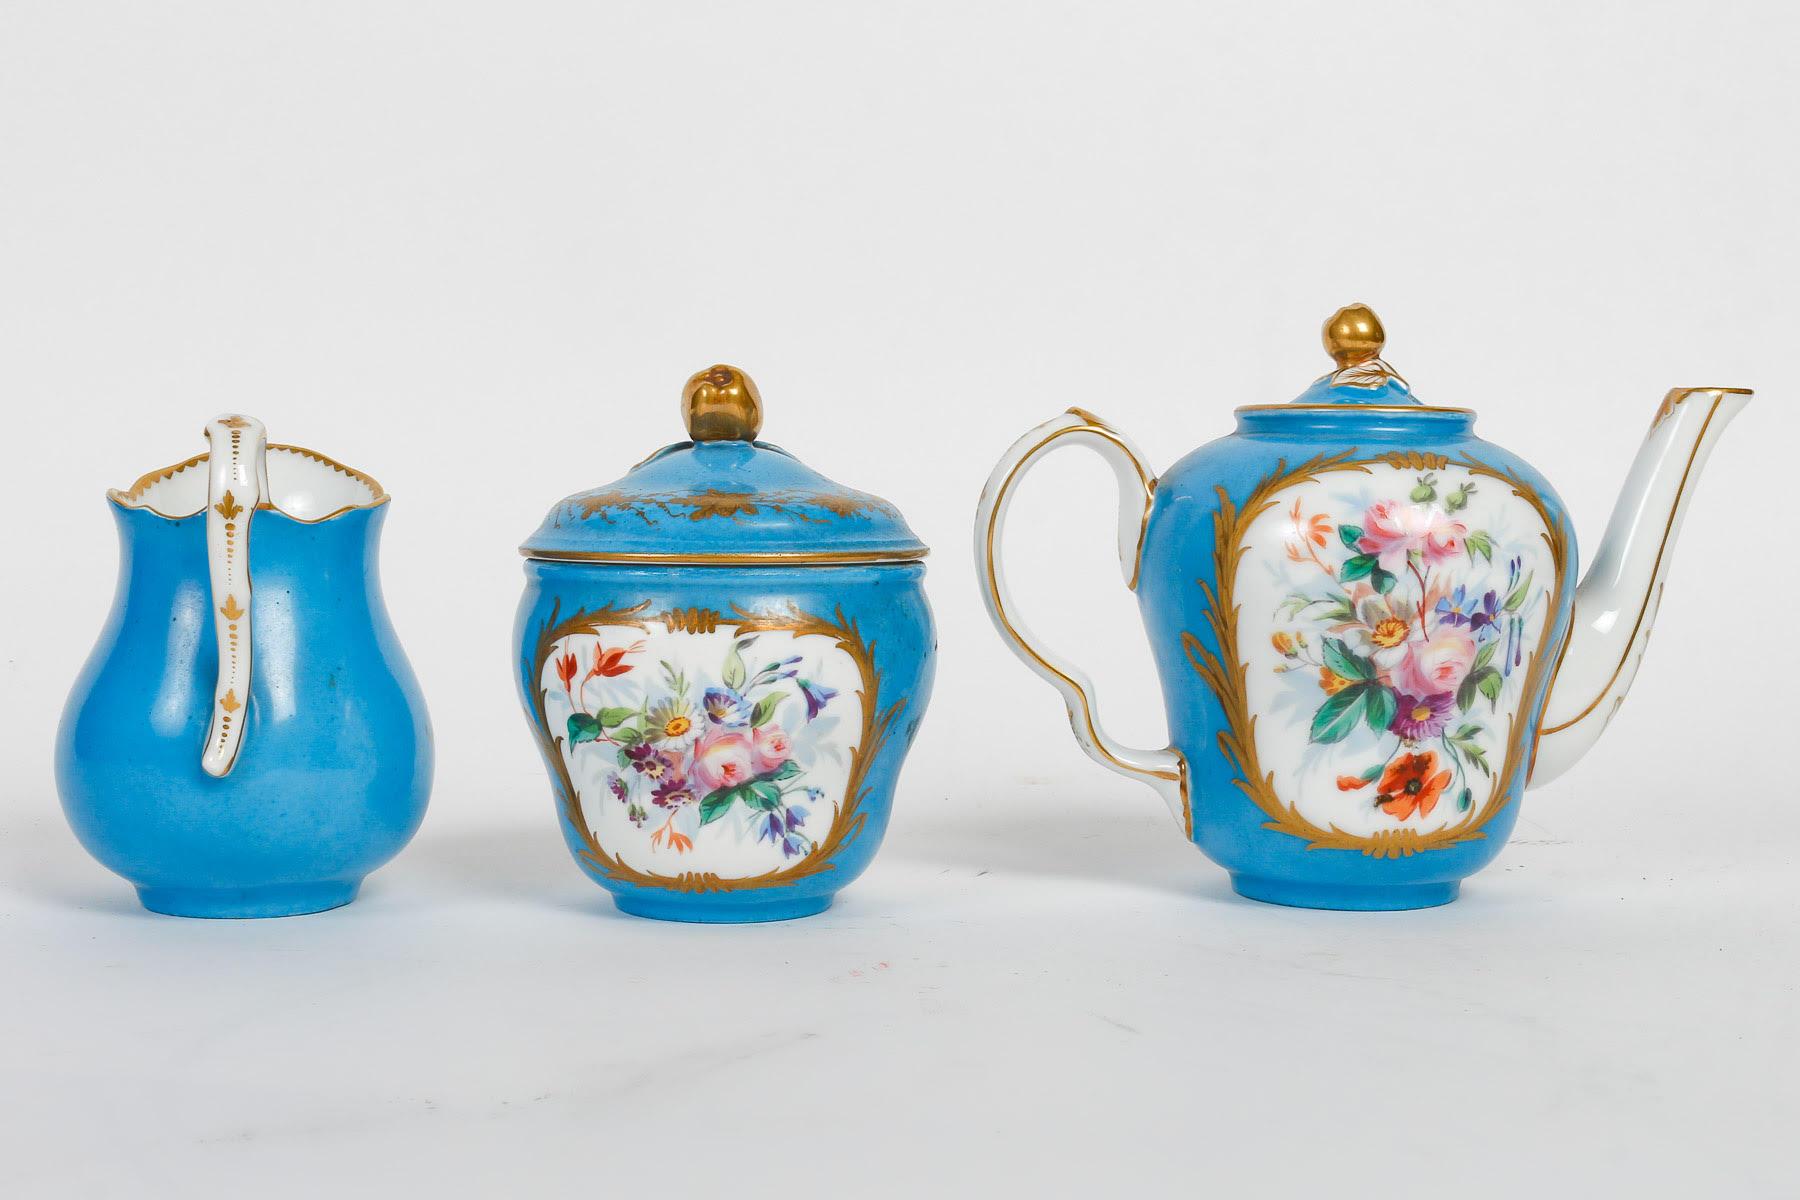 Tête-à-tête, Tea Service, Sèvres Porcelain, Napoleon III Period. For Sale 3